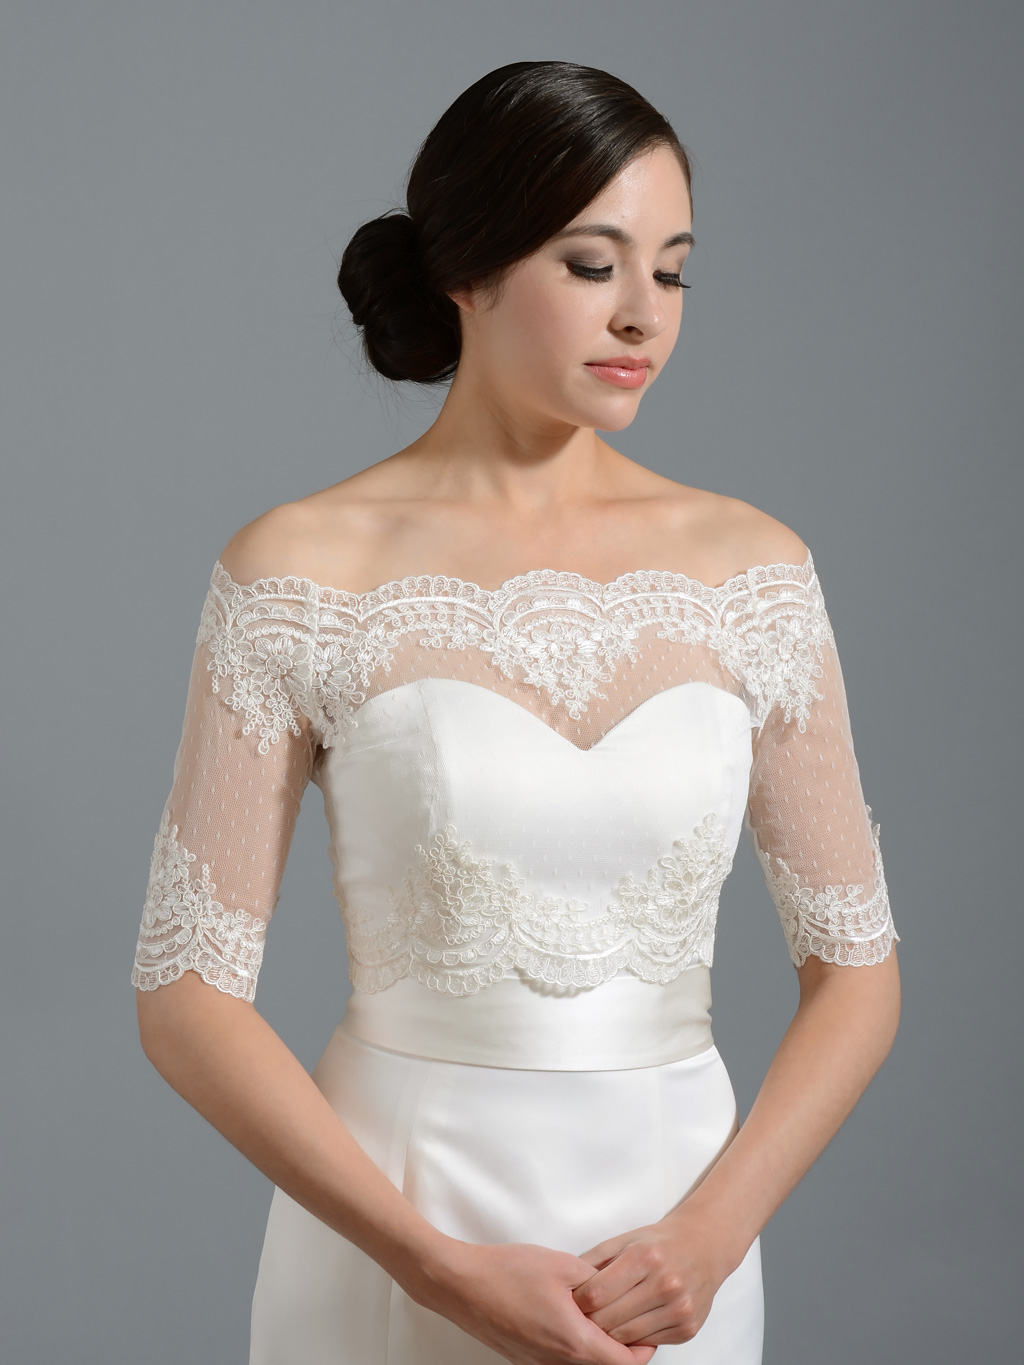 NEW Womens Bridal Ivory/White/Black Tulle Bolero Shrug Wedding Jacket Size S-2XL 